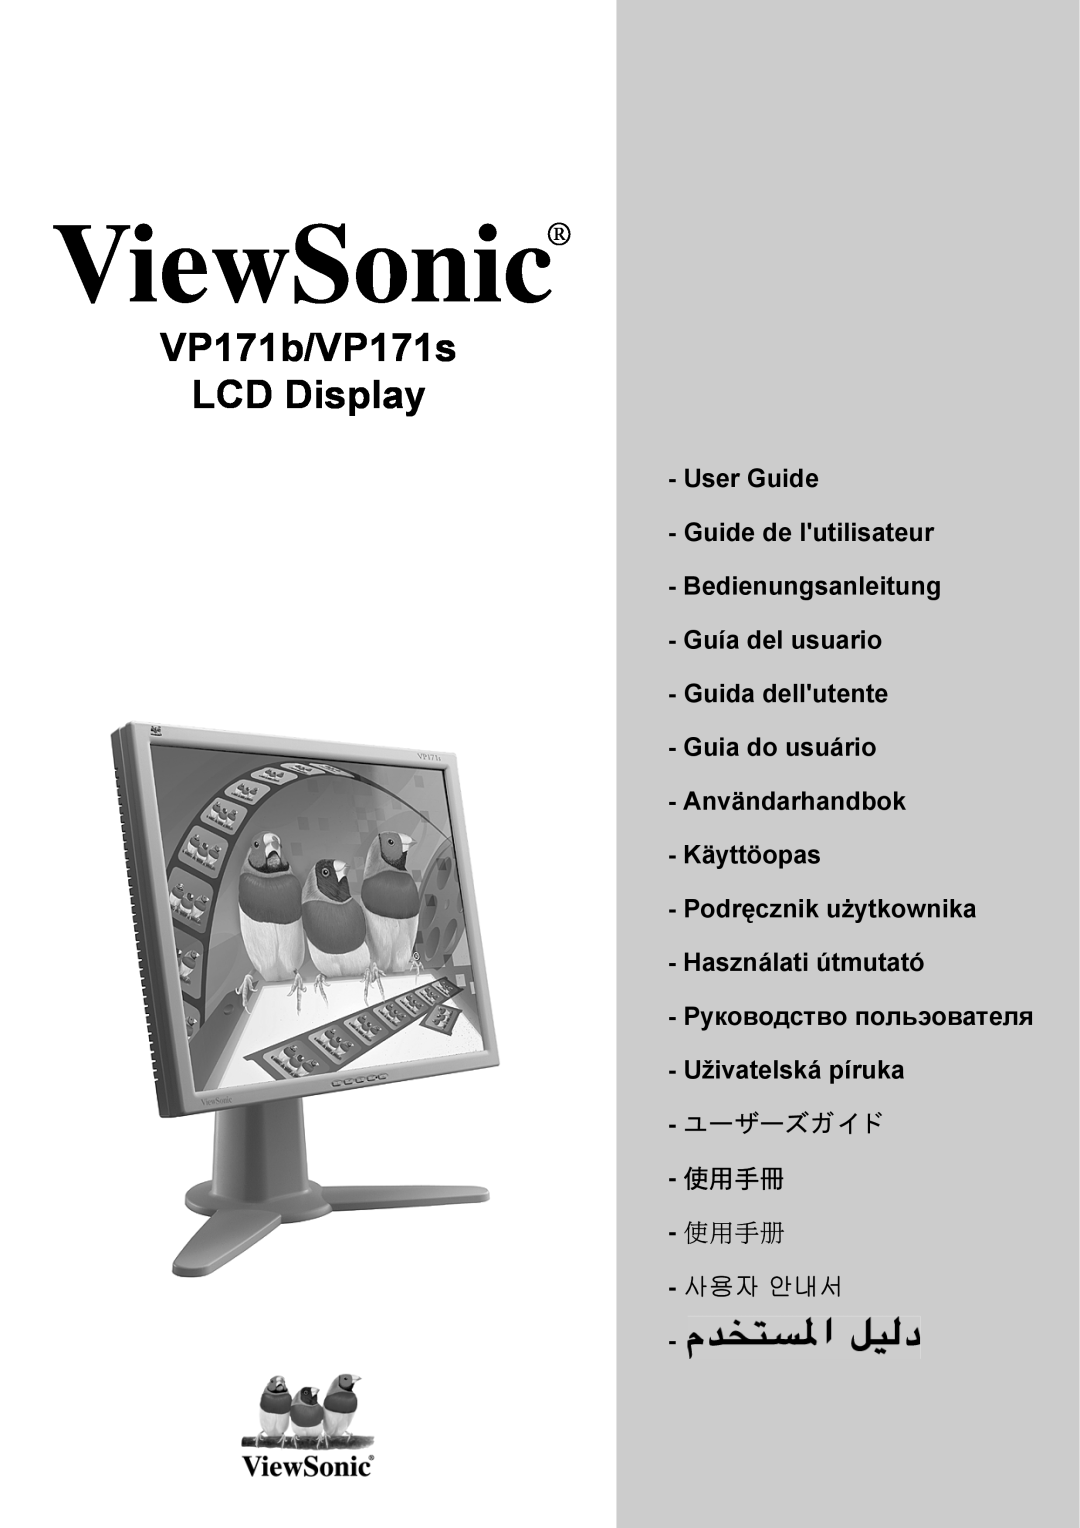 ViewSonic VP171b/VP171s manual User Guide, Guida dellutente - Guia do usuário, Användarhandbok Käyttöopas, ViewSonic 